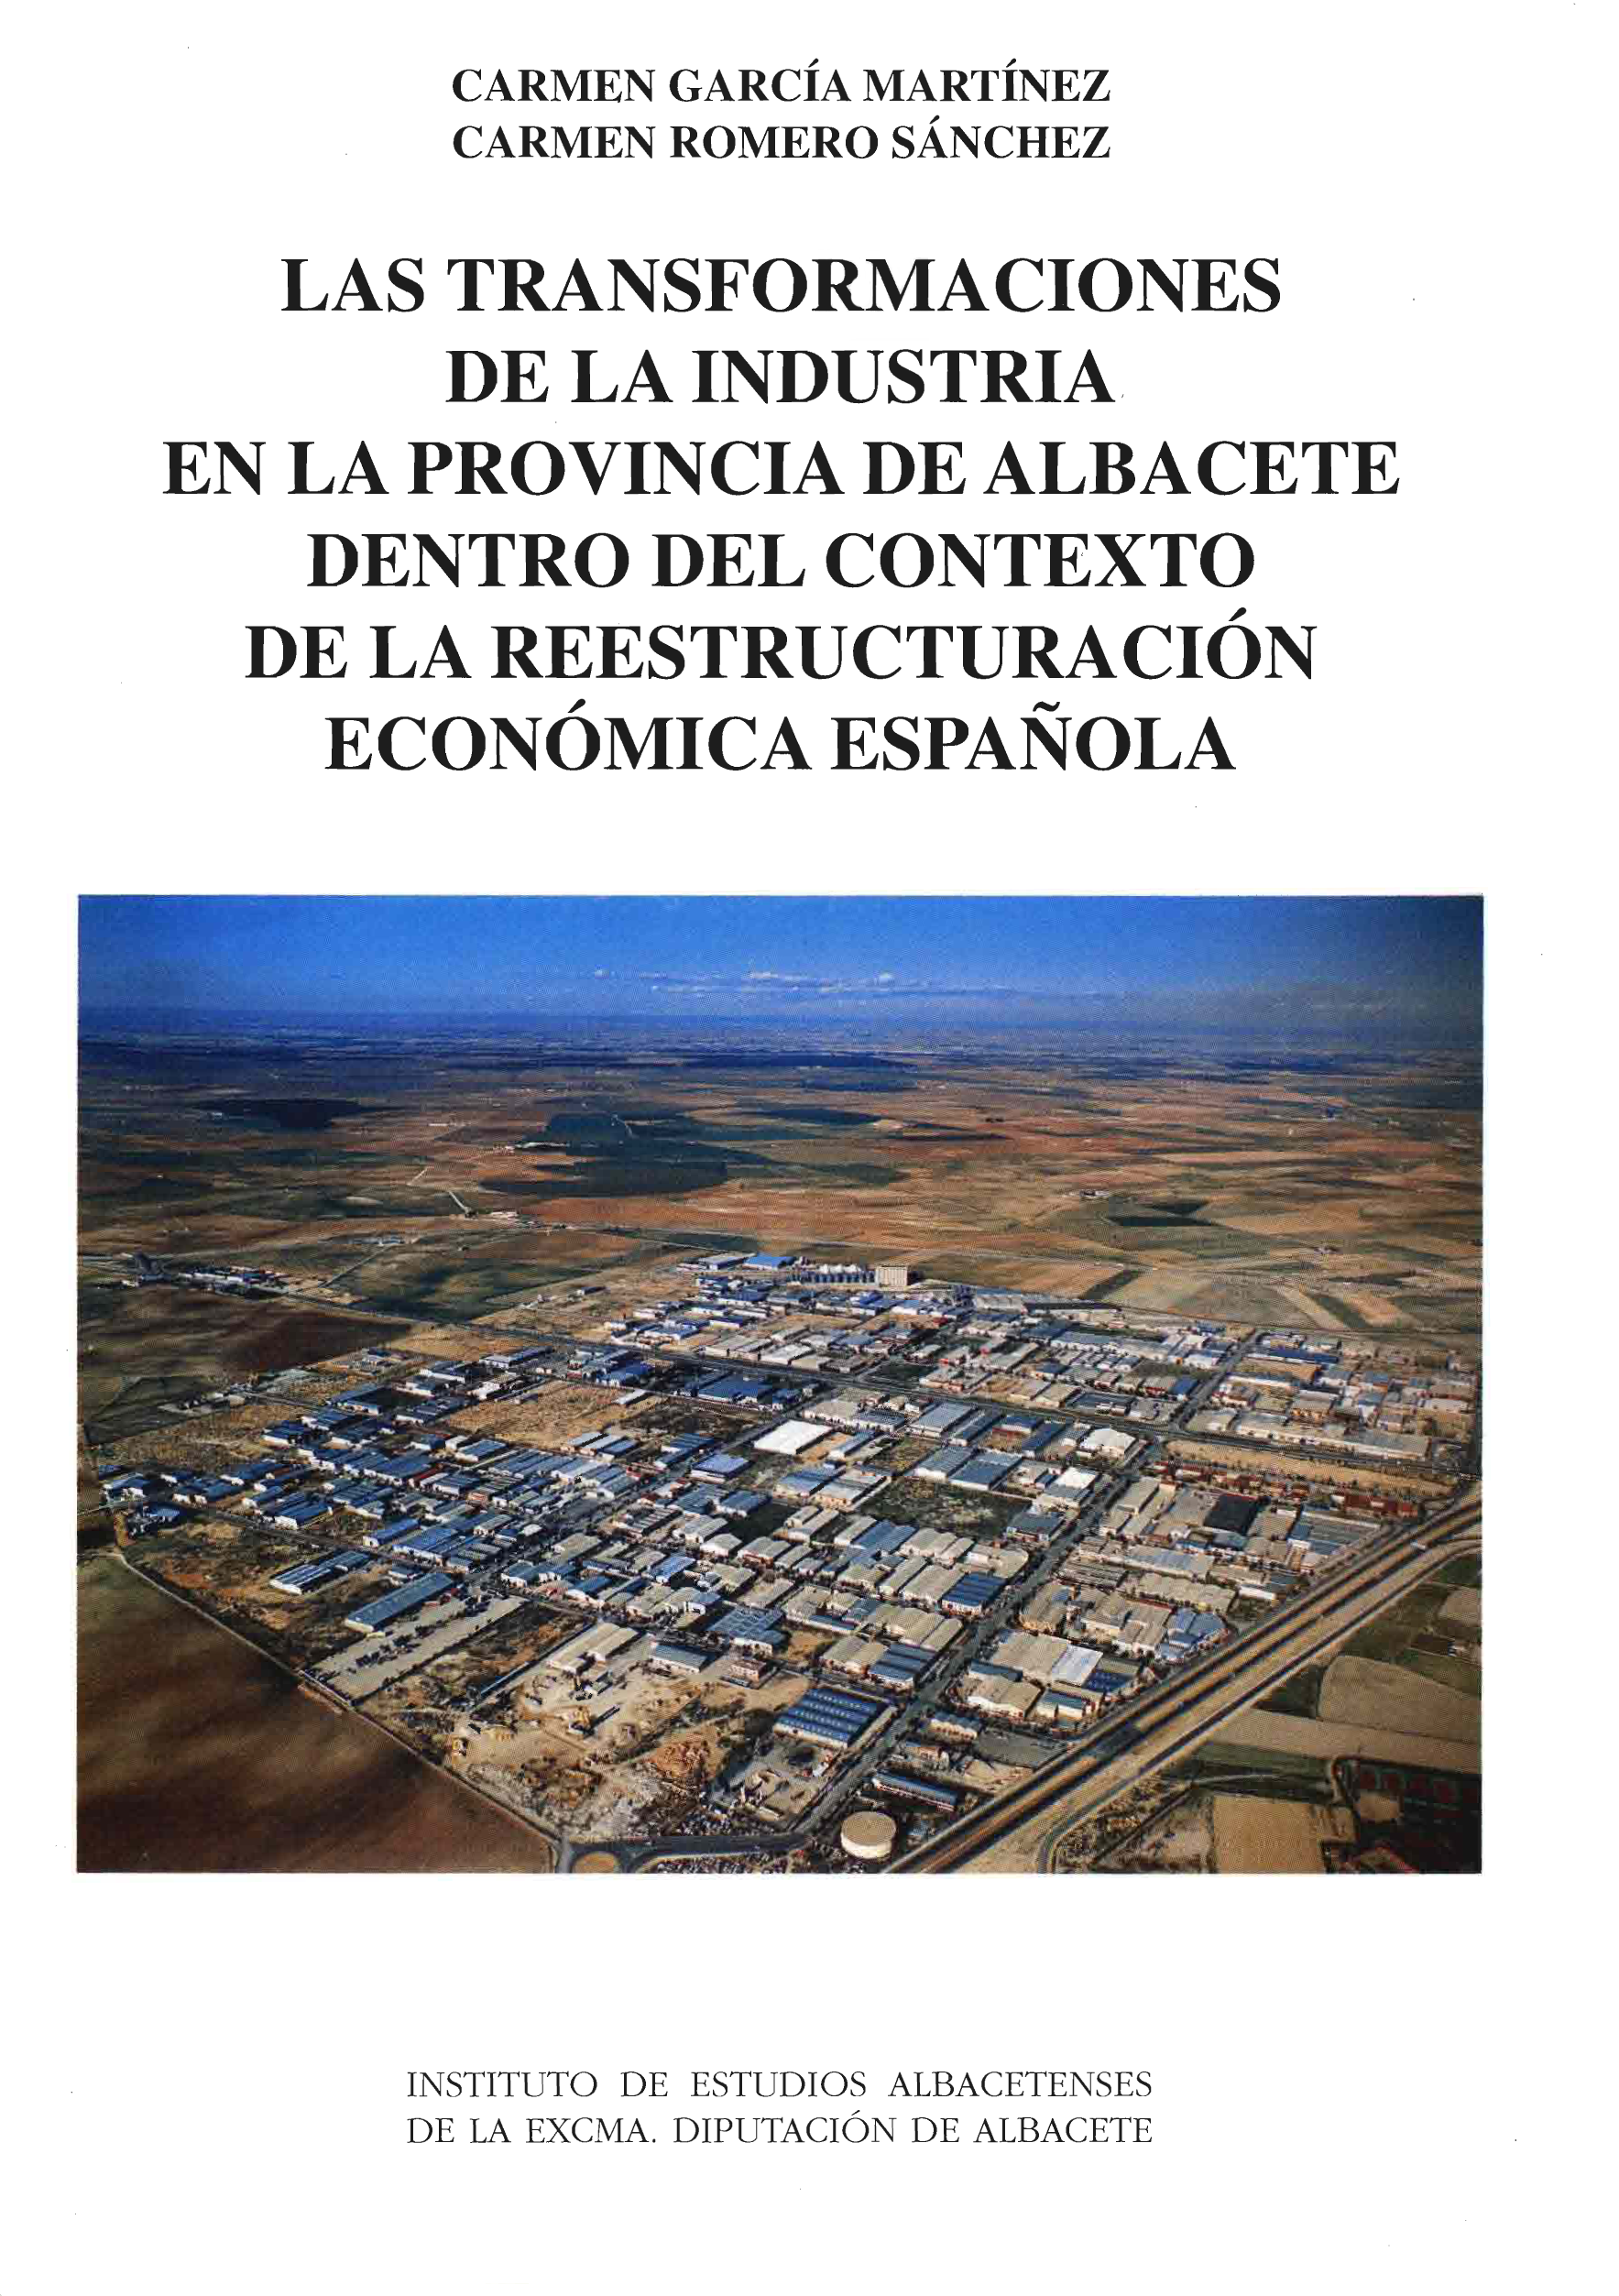 Imagen de portada del libro Las transformaciones de la industria en la provincia de Albacete dentro del contexto de la reestructuración económica española